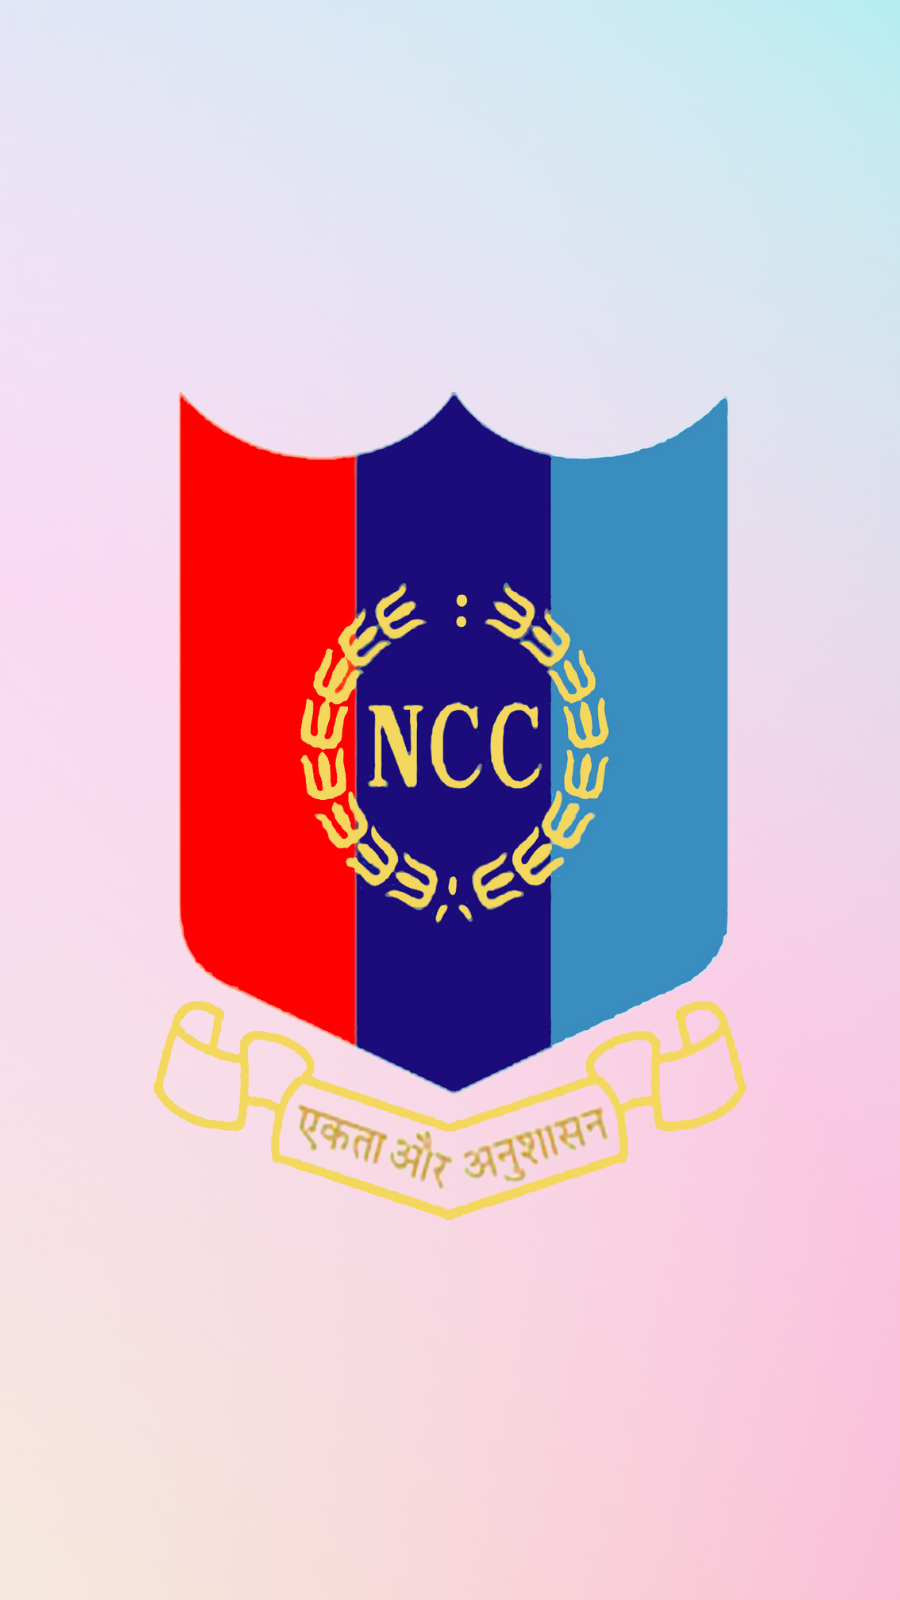 NCC unit MGC